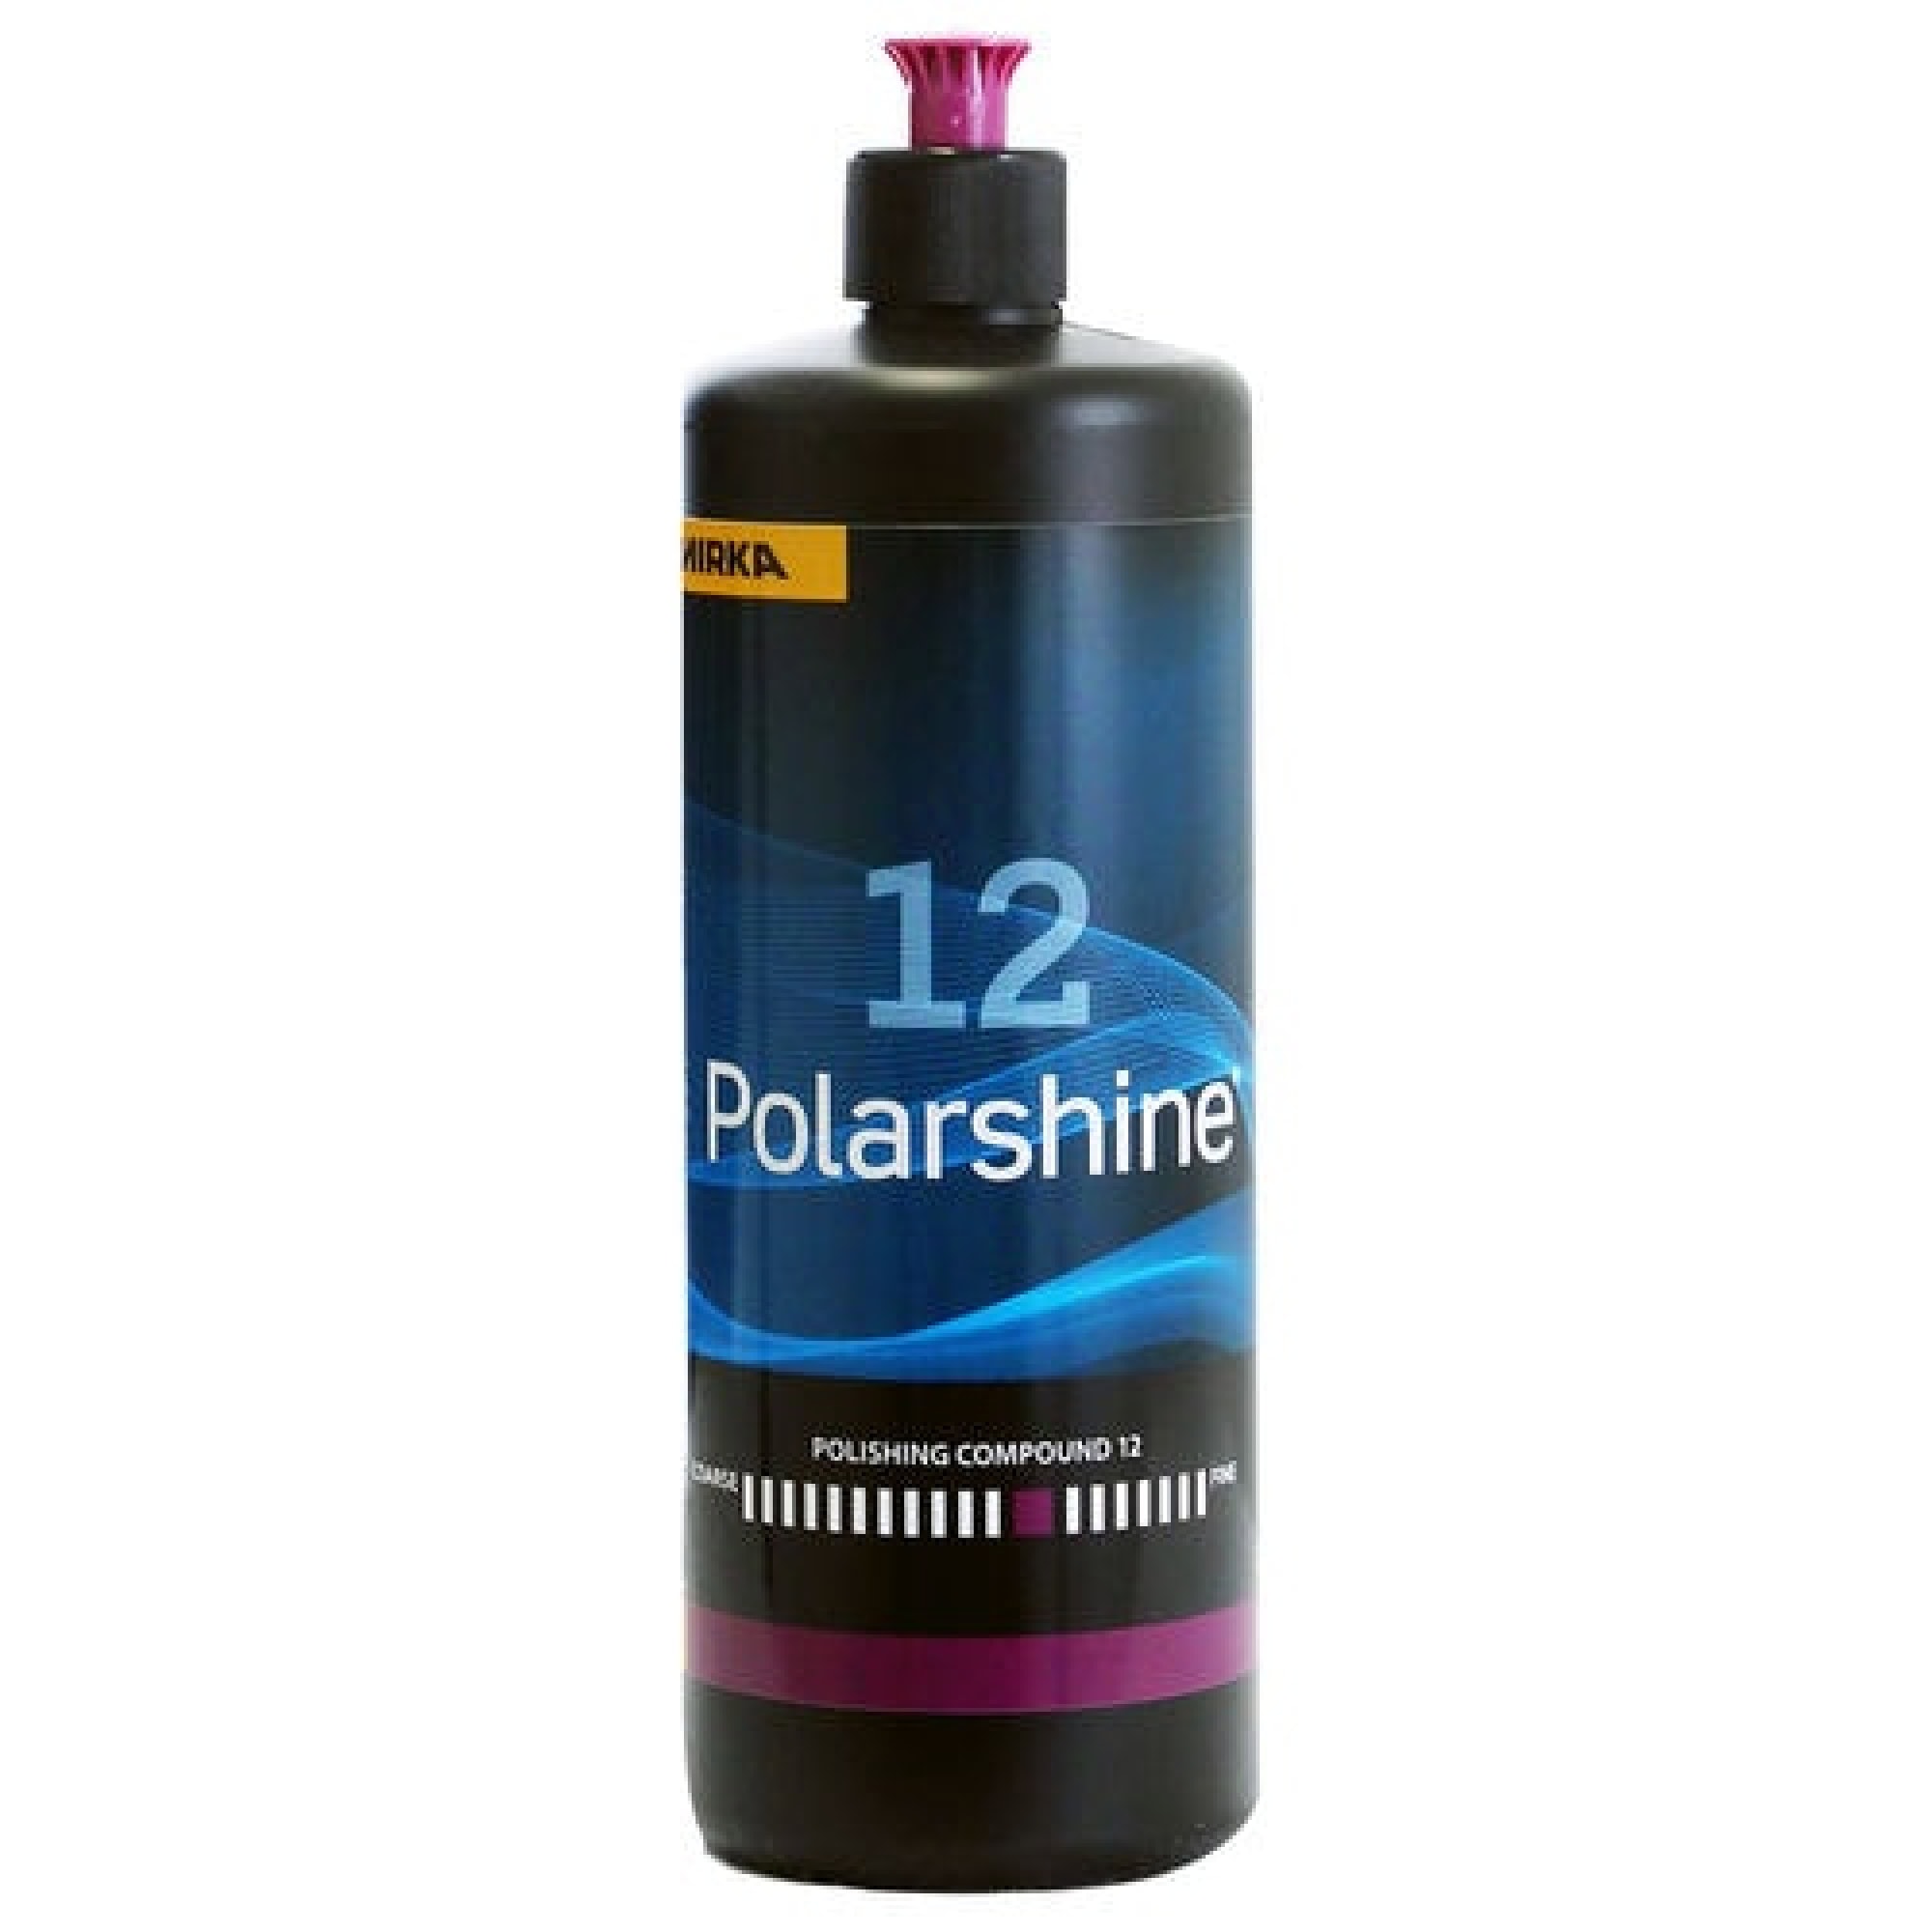 Mirka® Polarshine 12 7991210111, 1 Liter, Mittelgrobe One-Step Politur ideal für sehr feine Kratzer oder Unebenheiten